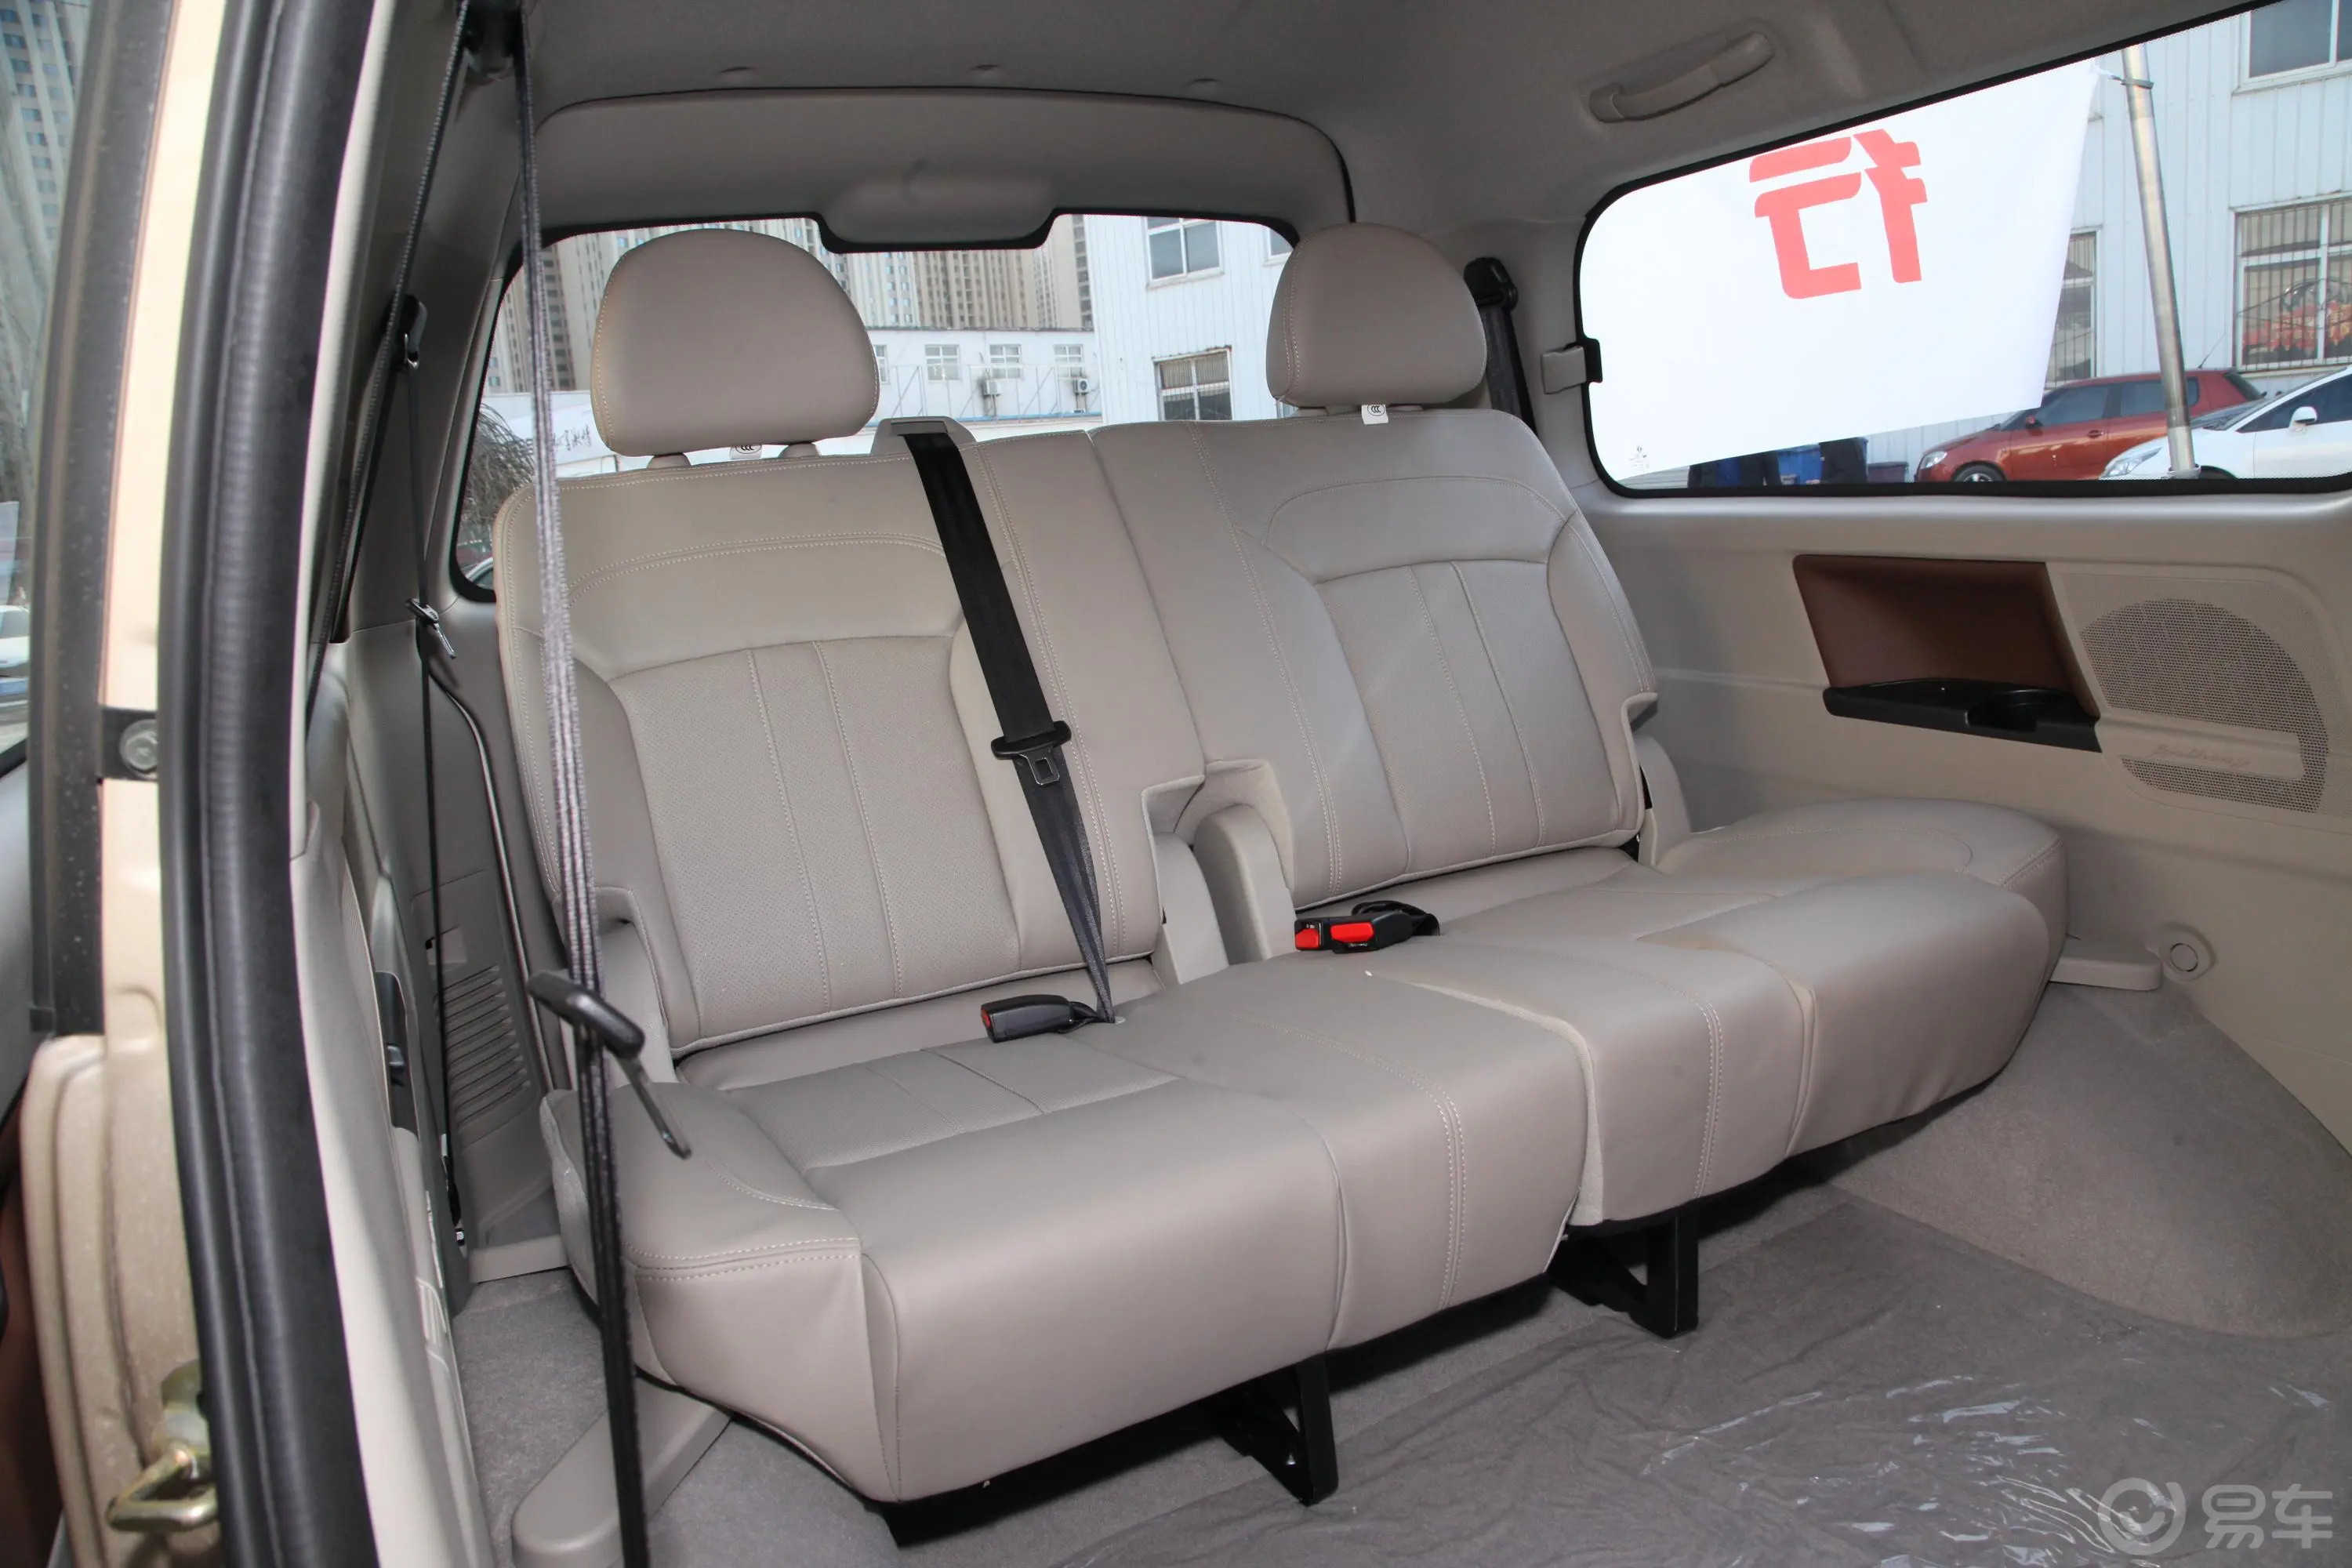 菱智M5 1.6L 手动 豪华型 7座 国VI第三排座椅